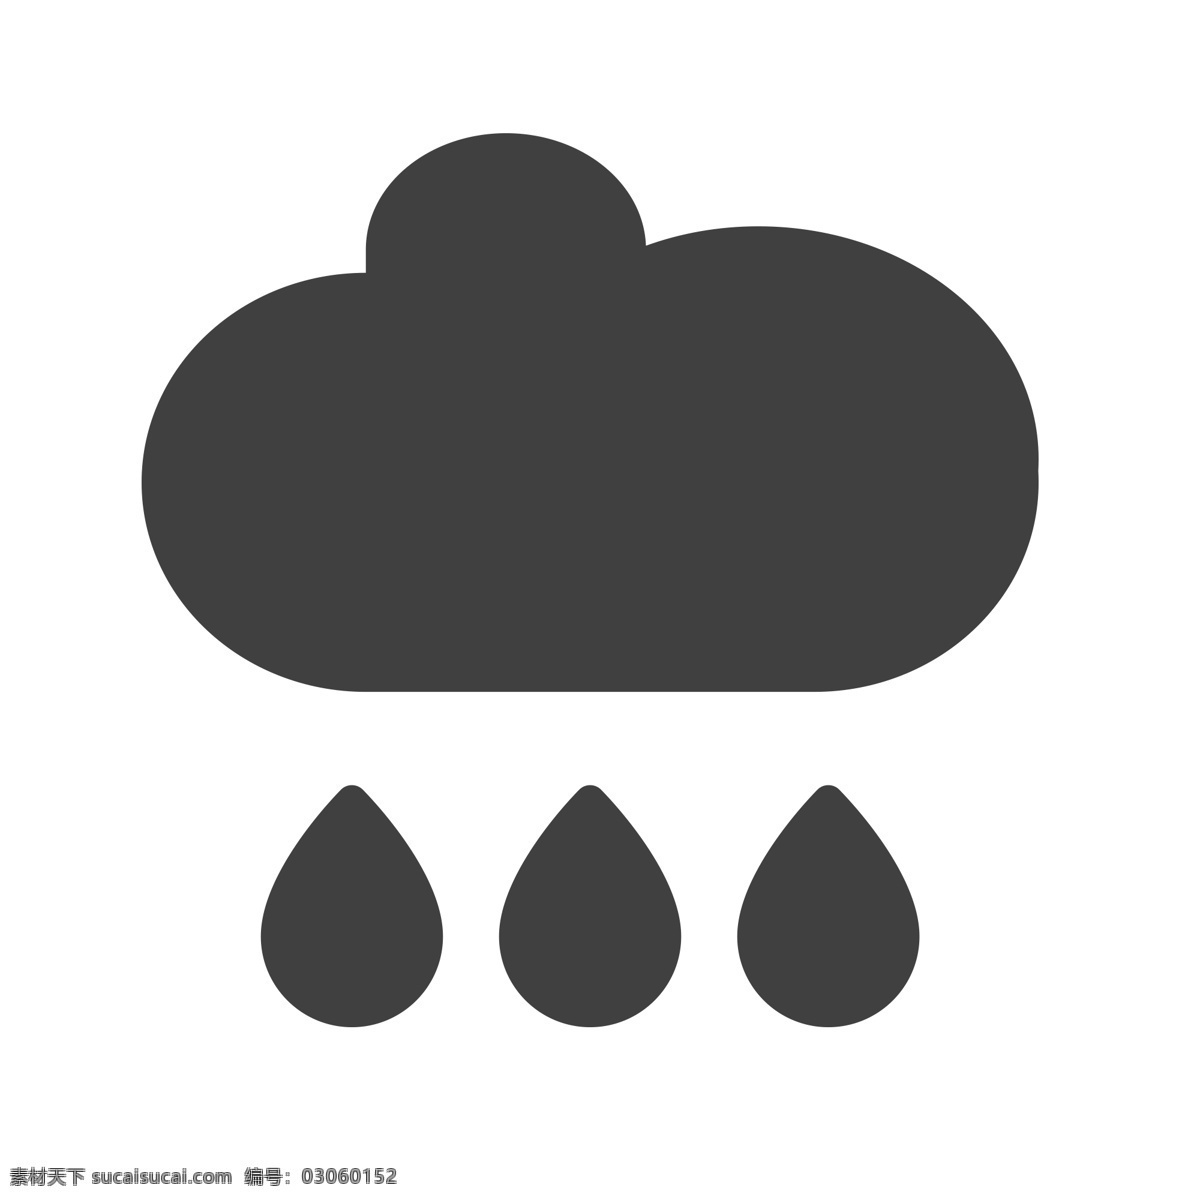 下雨图标 下雨 天气图标 扁平化ui ui图标 手机图标 界面ui 网页ui h5图标